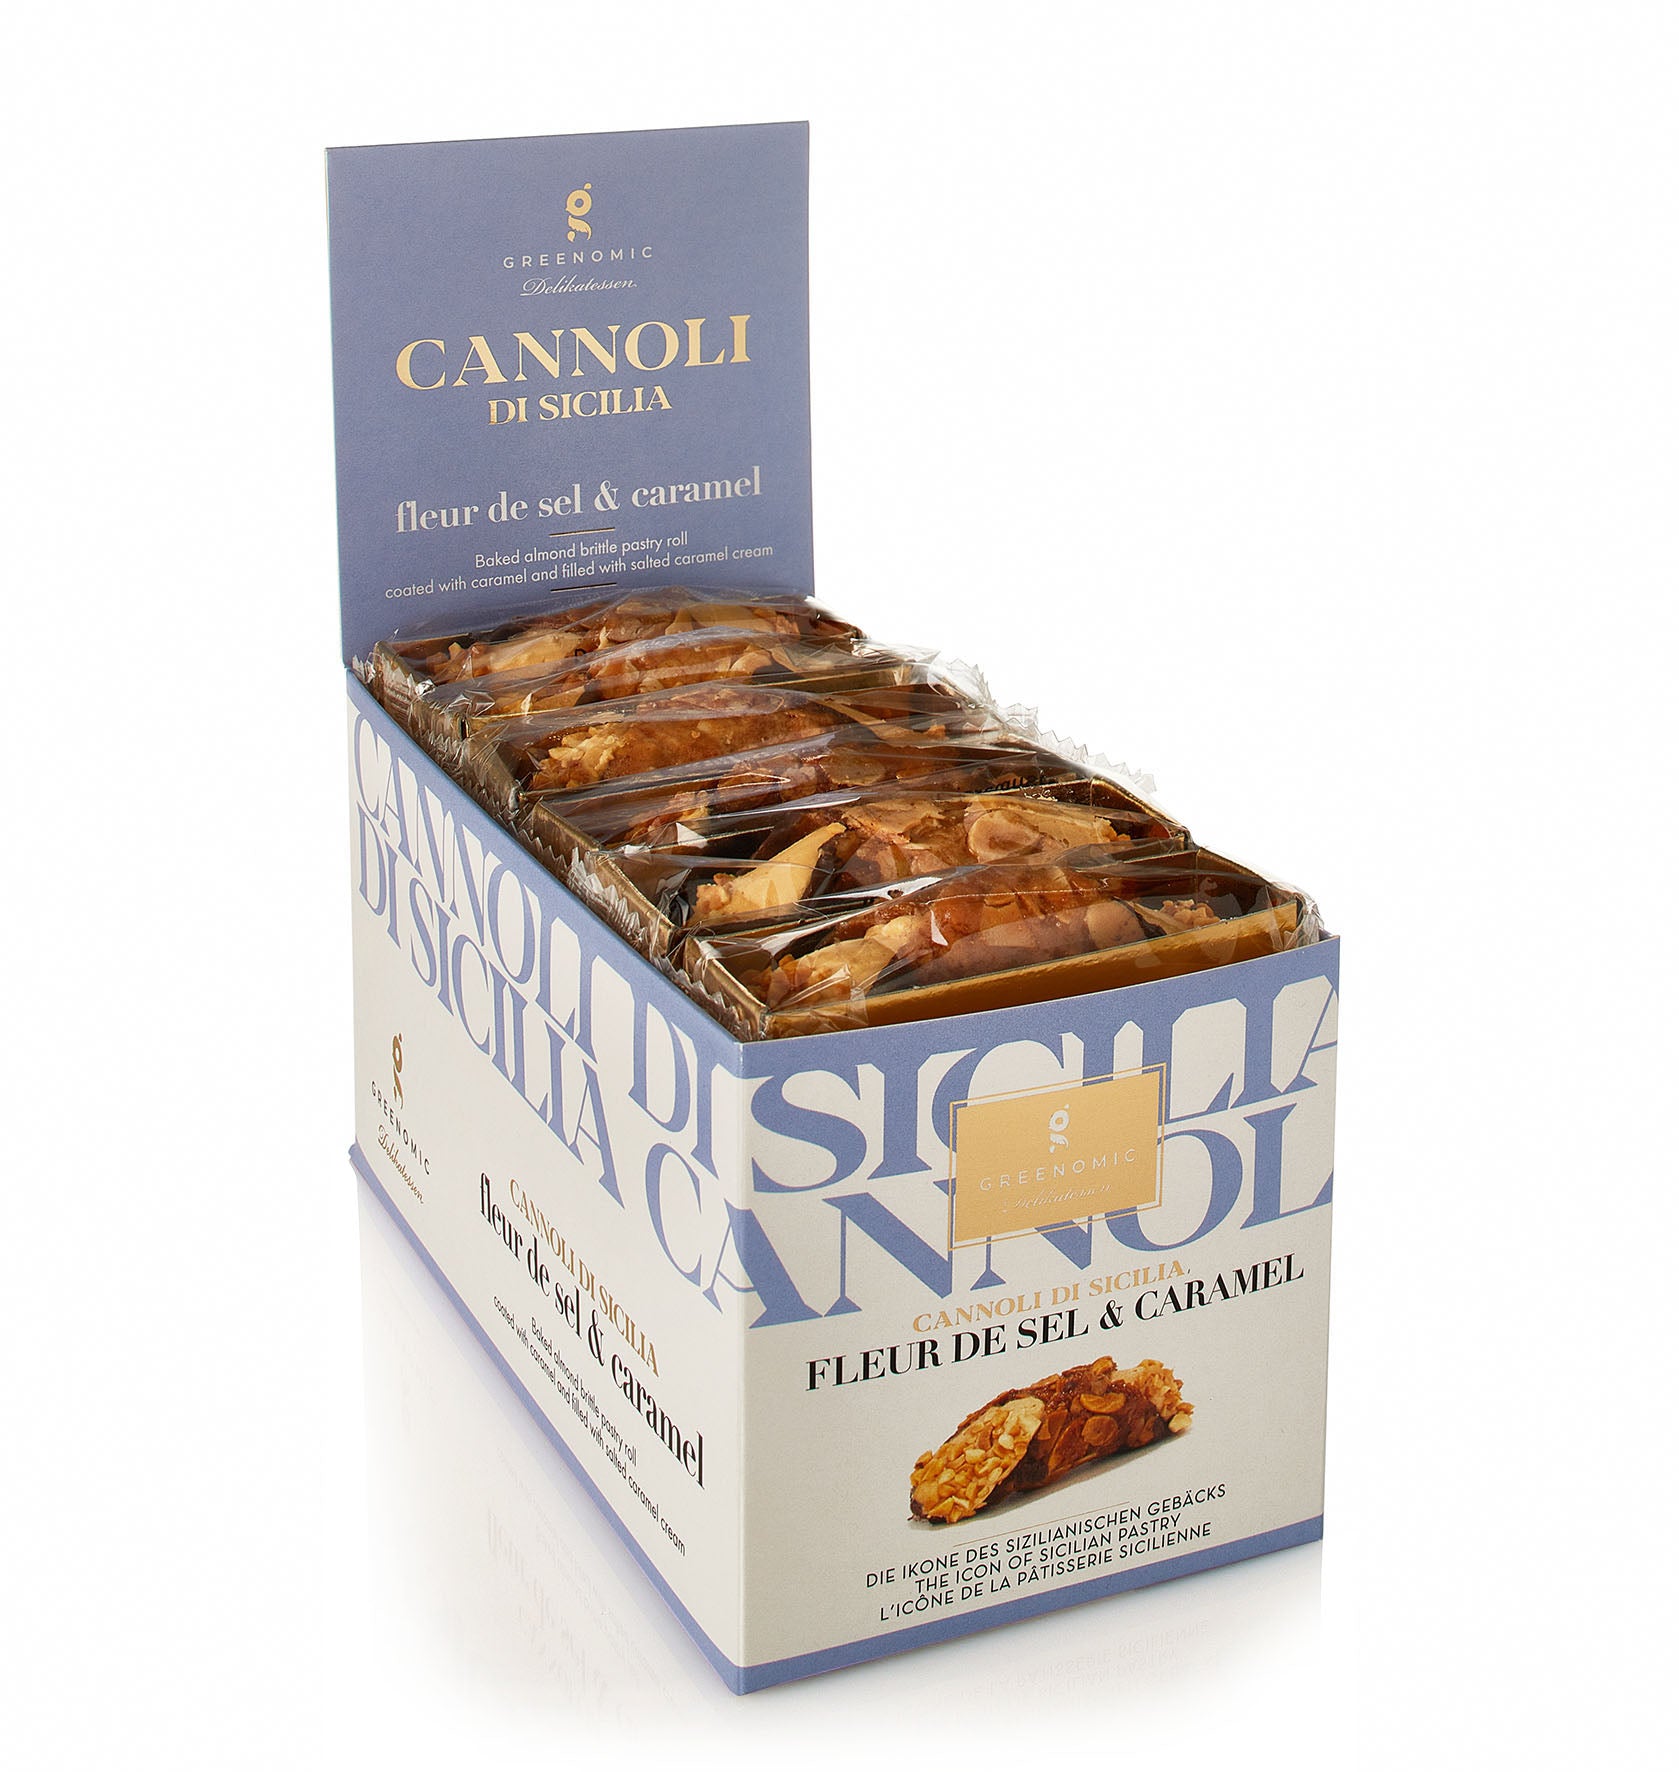 Cannoli with Fleur de Sel & Caramel